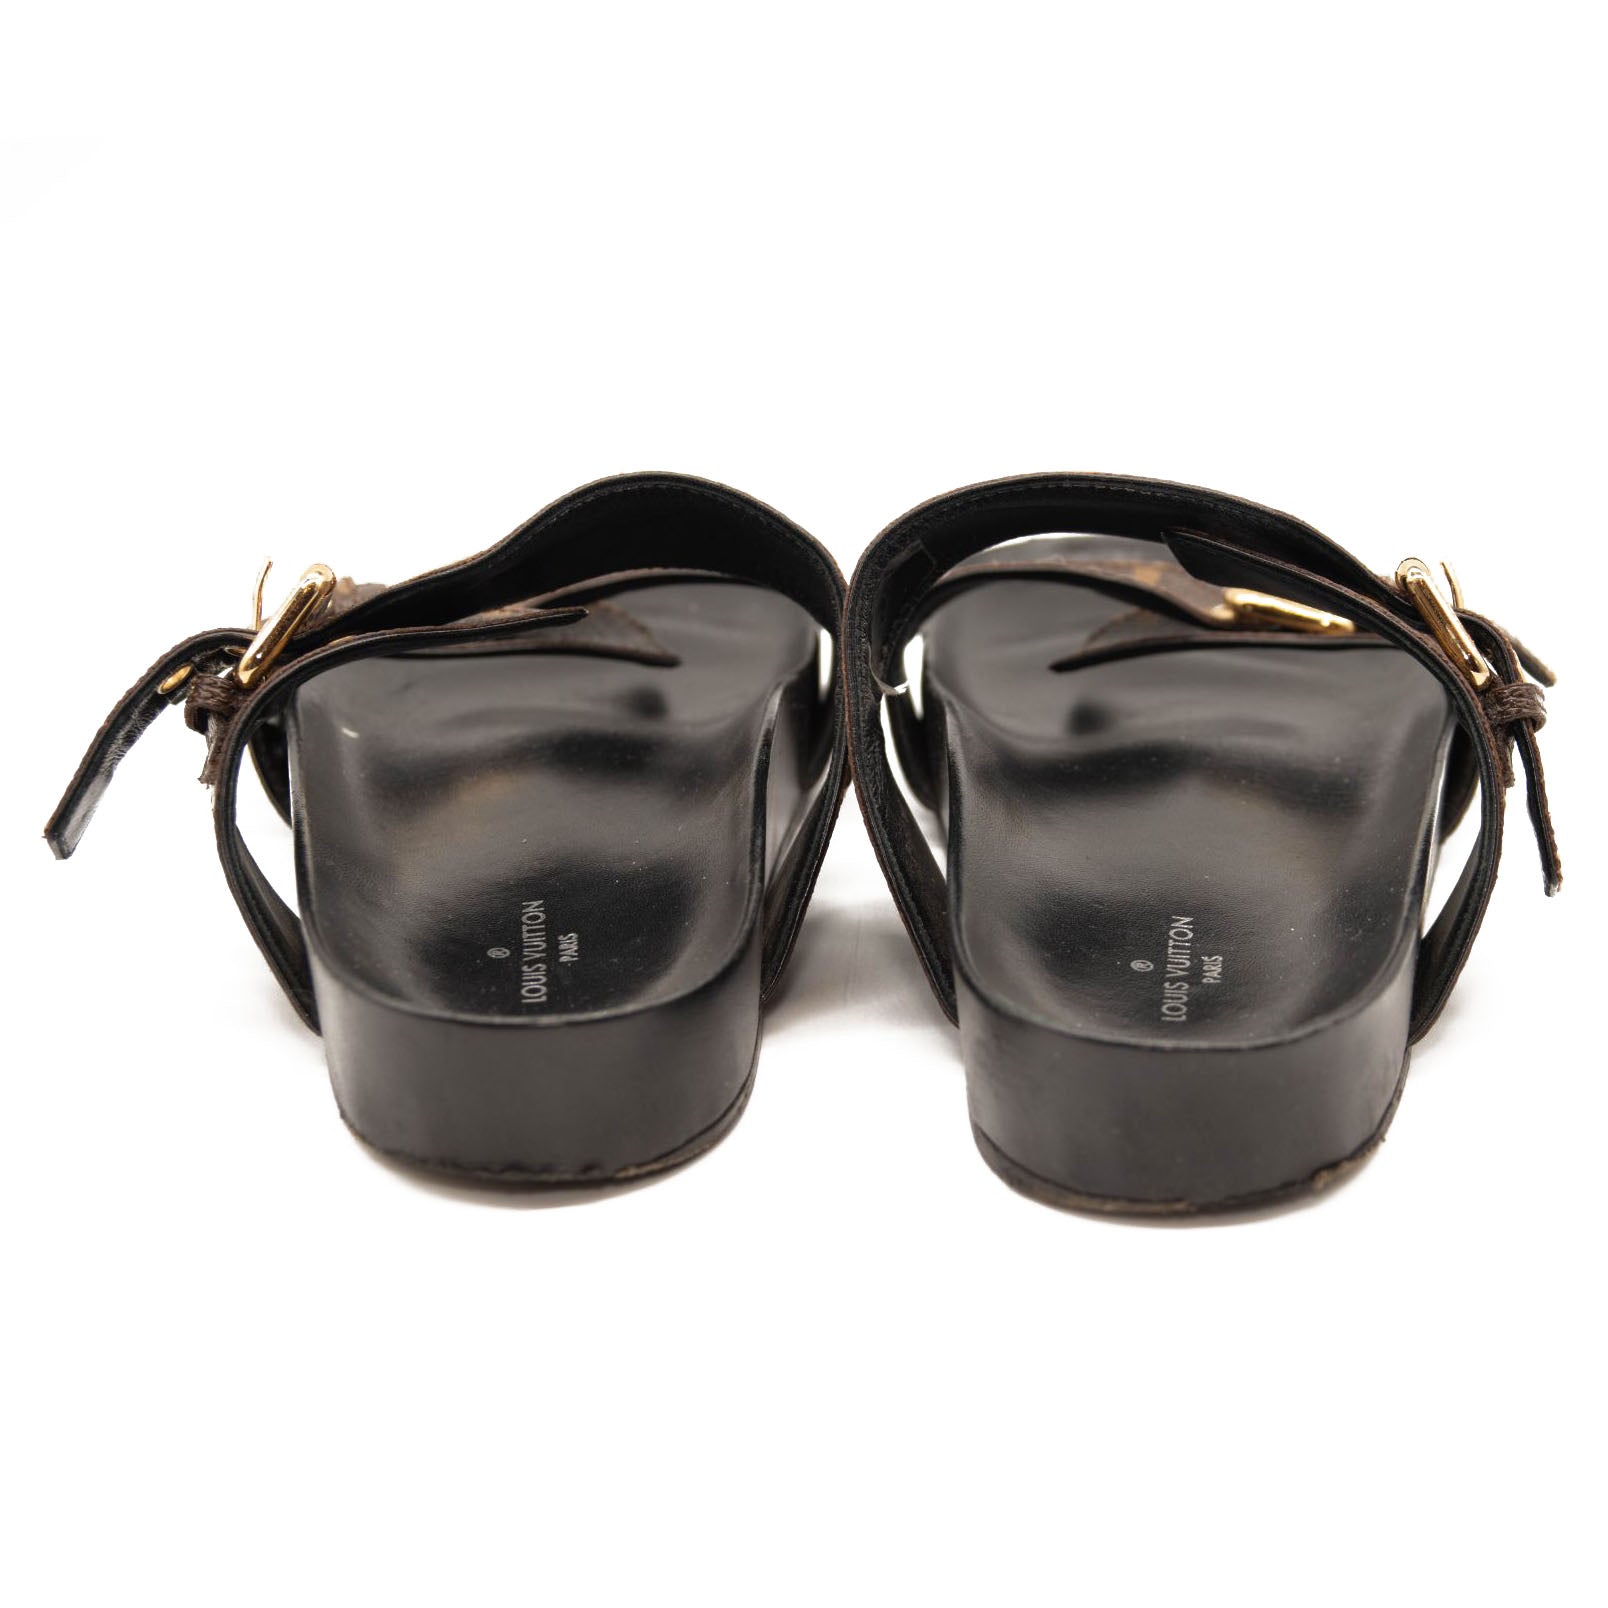 Louis Vuitton Black Leather Criss Cross Strap Flat Slide Sandals